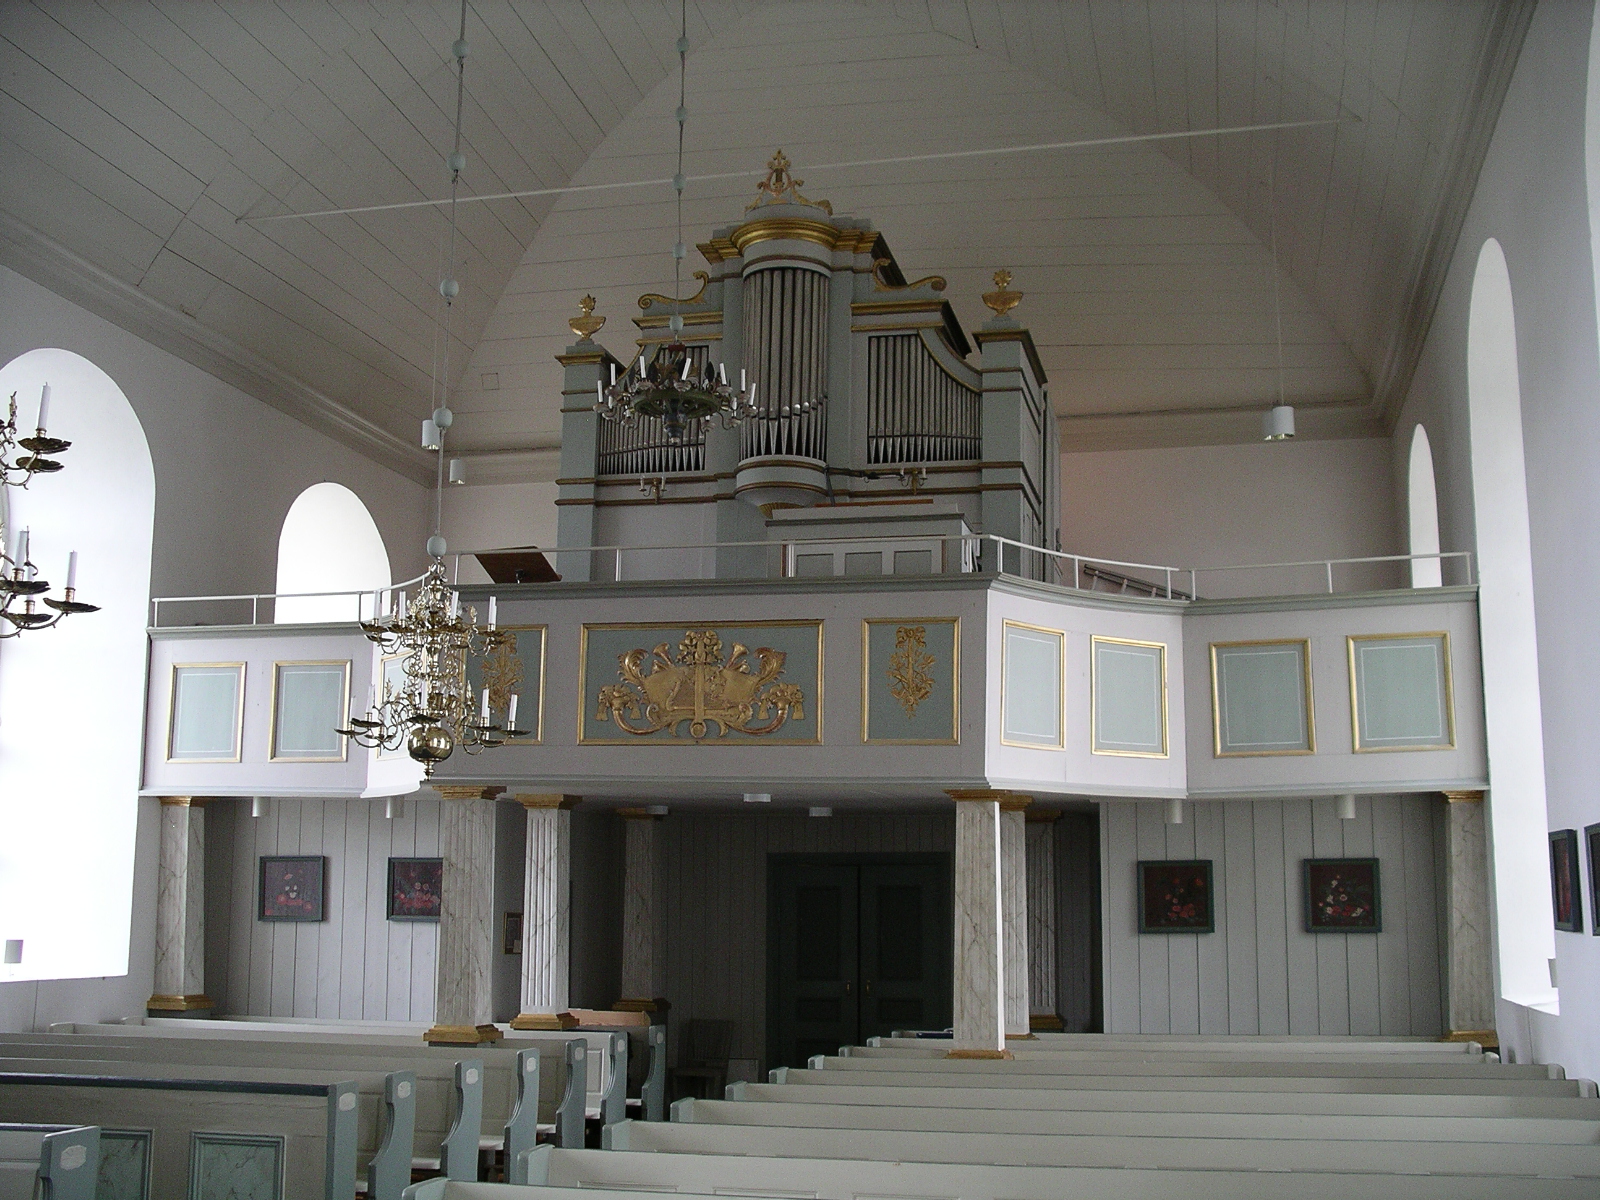 Ytterhogdals kyrka, interiör, kyrkorummet mot väster.


Bilderna är tagna av Christina Persson & Isa Lindkvist vid Jämtlands läns museum i samband med inventeringen 2005-2006. 